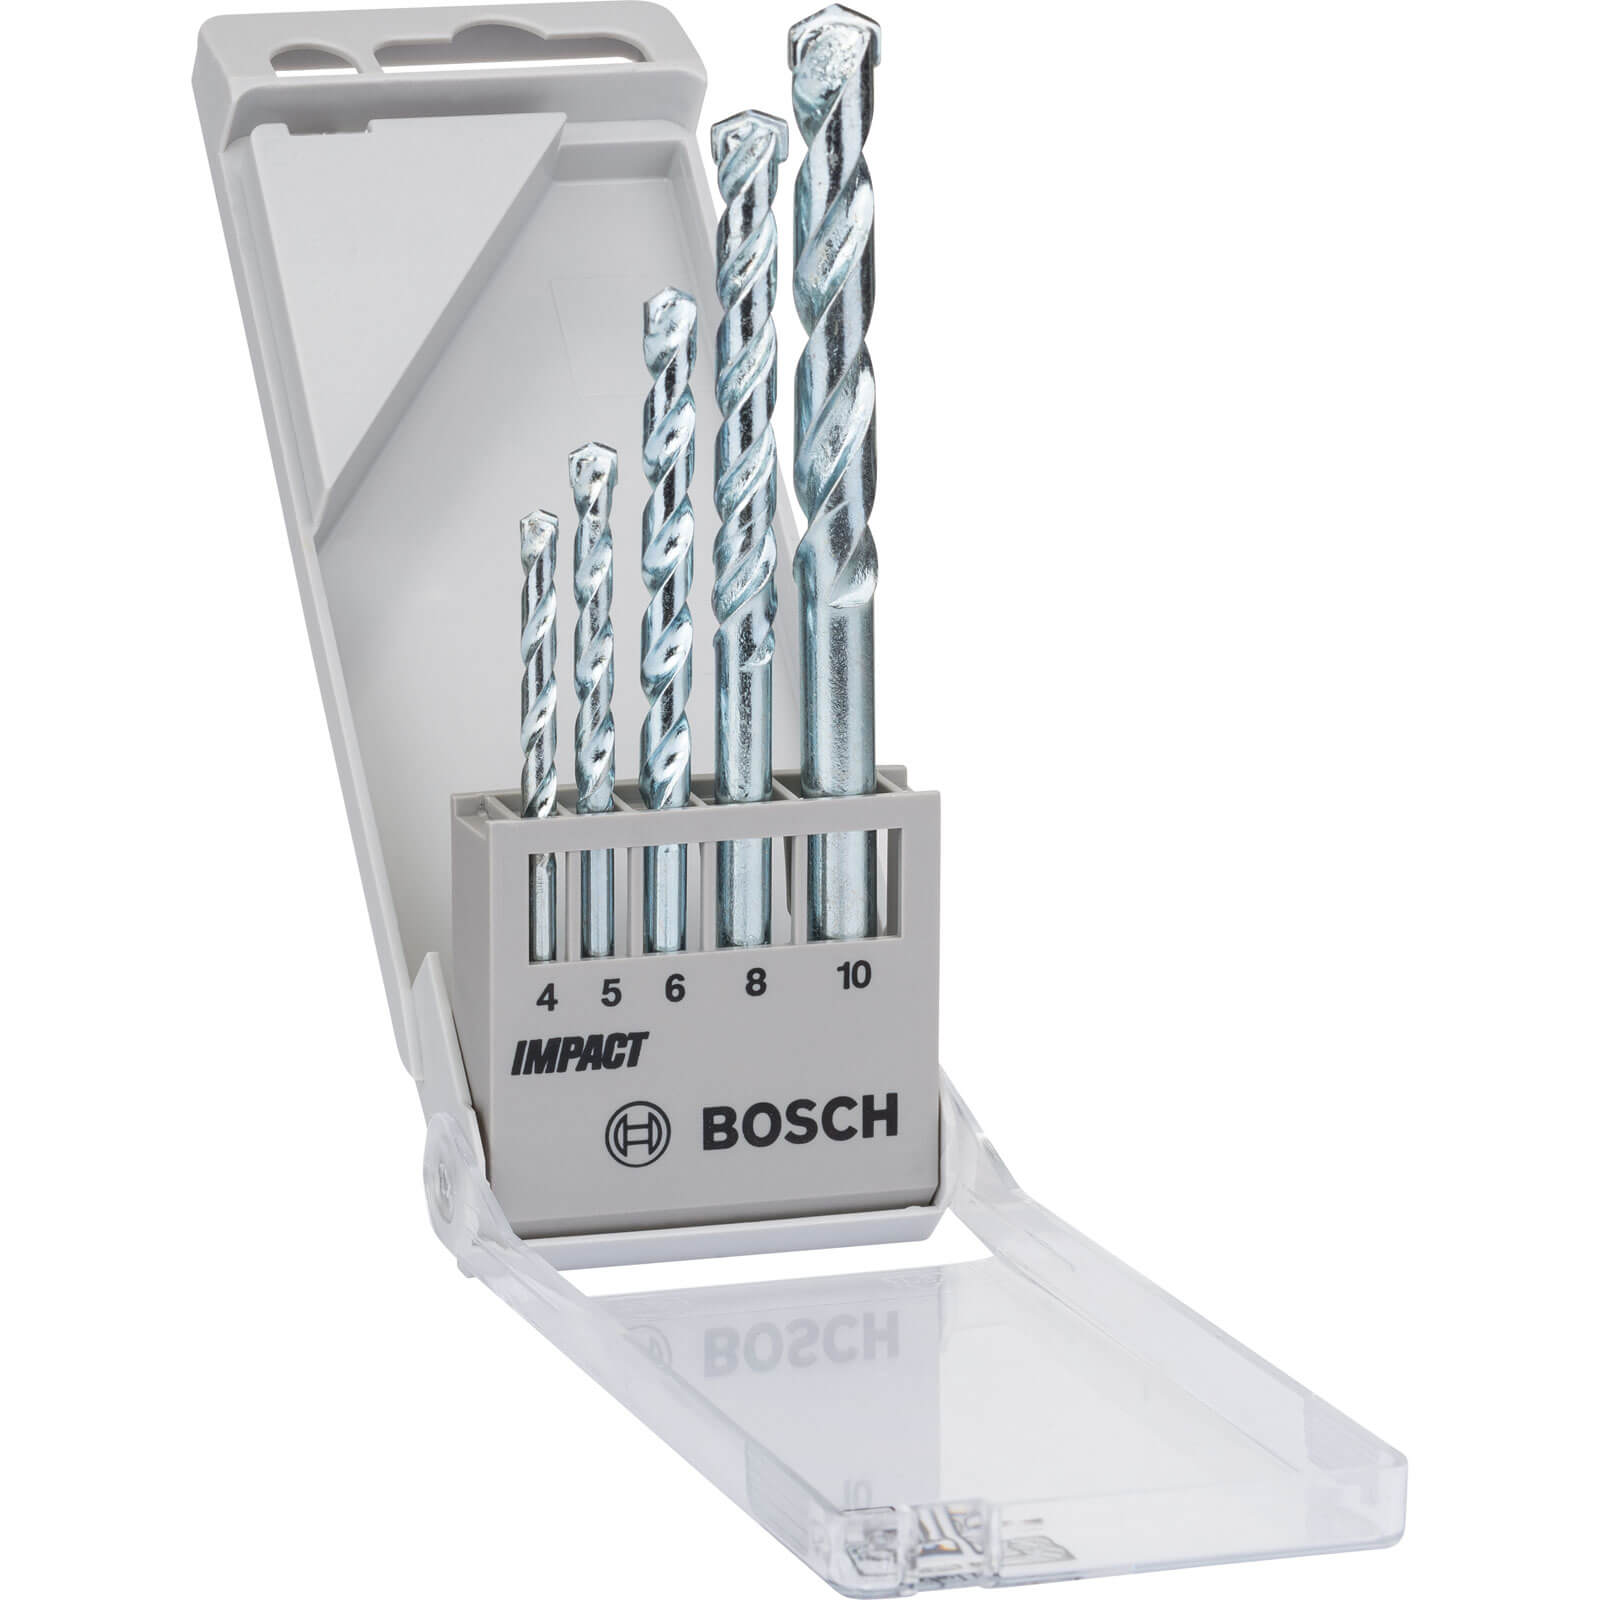 Photo of Bosch 5 Piece Impact Masonry Drill Bit Set